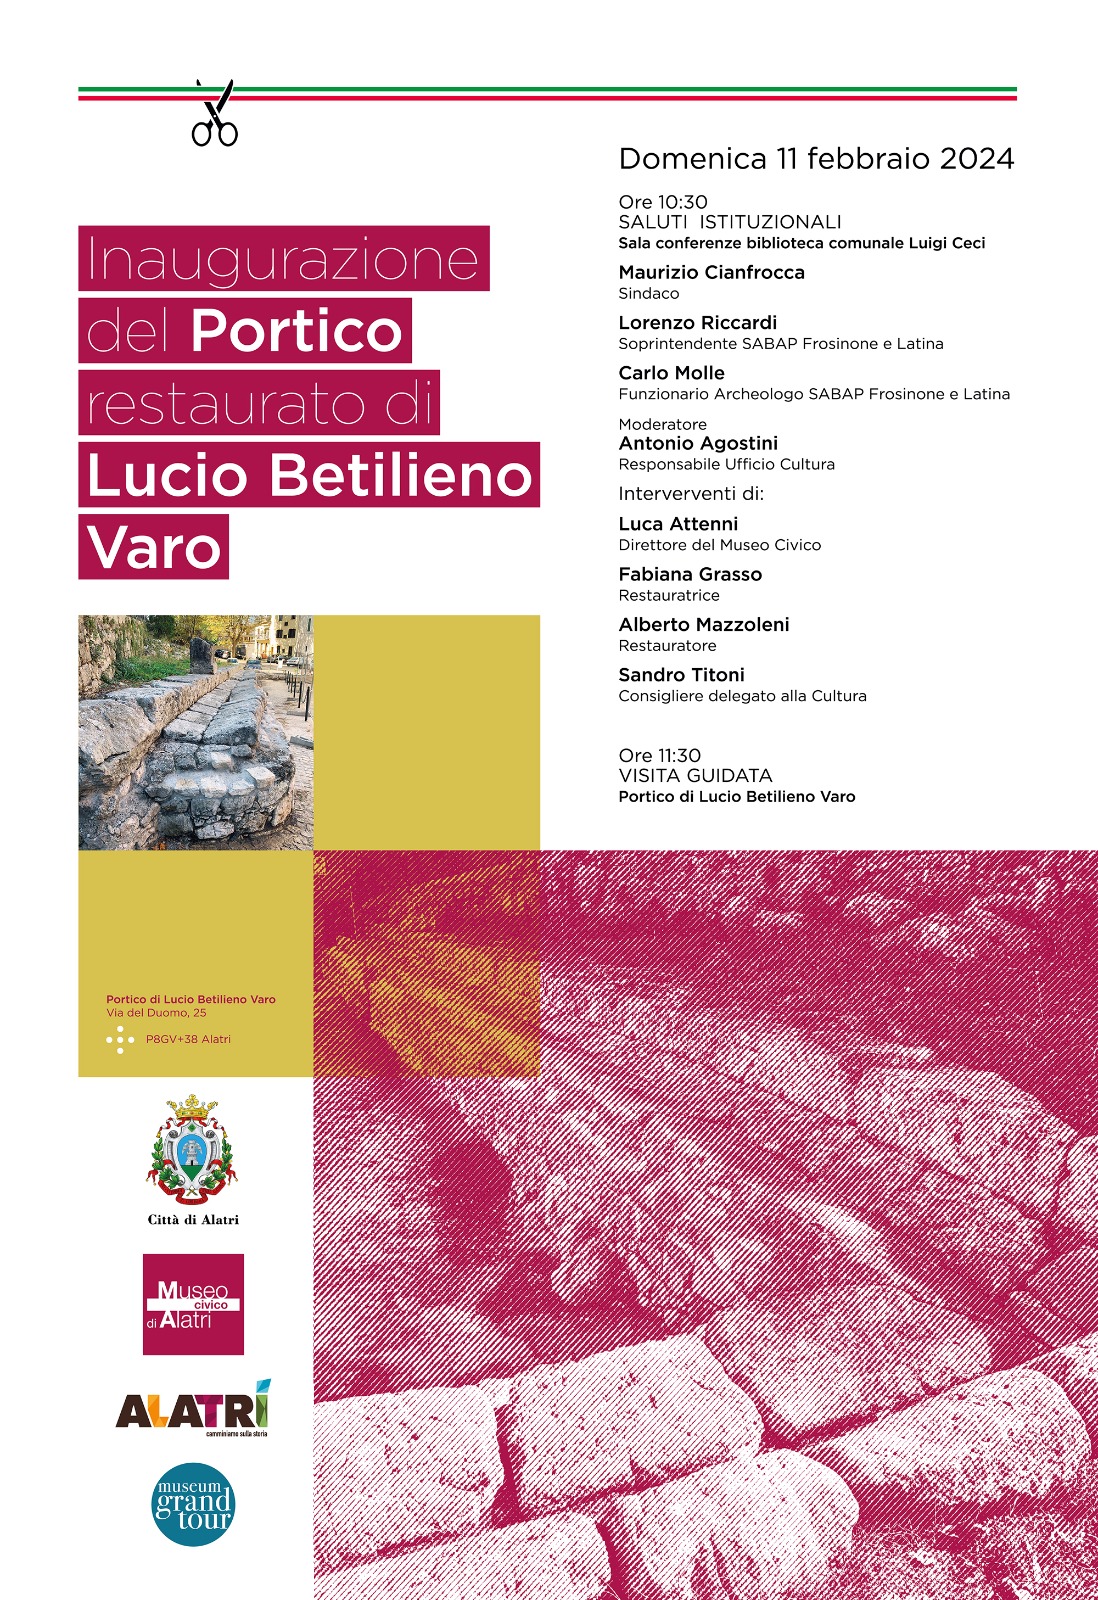 Locandina cerimonia di inaugurazione dei restauri del Portico di Lucio Betilieno Varo